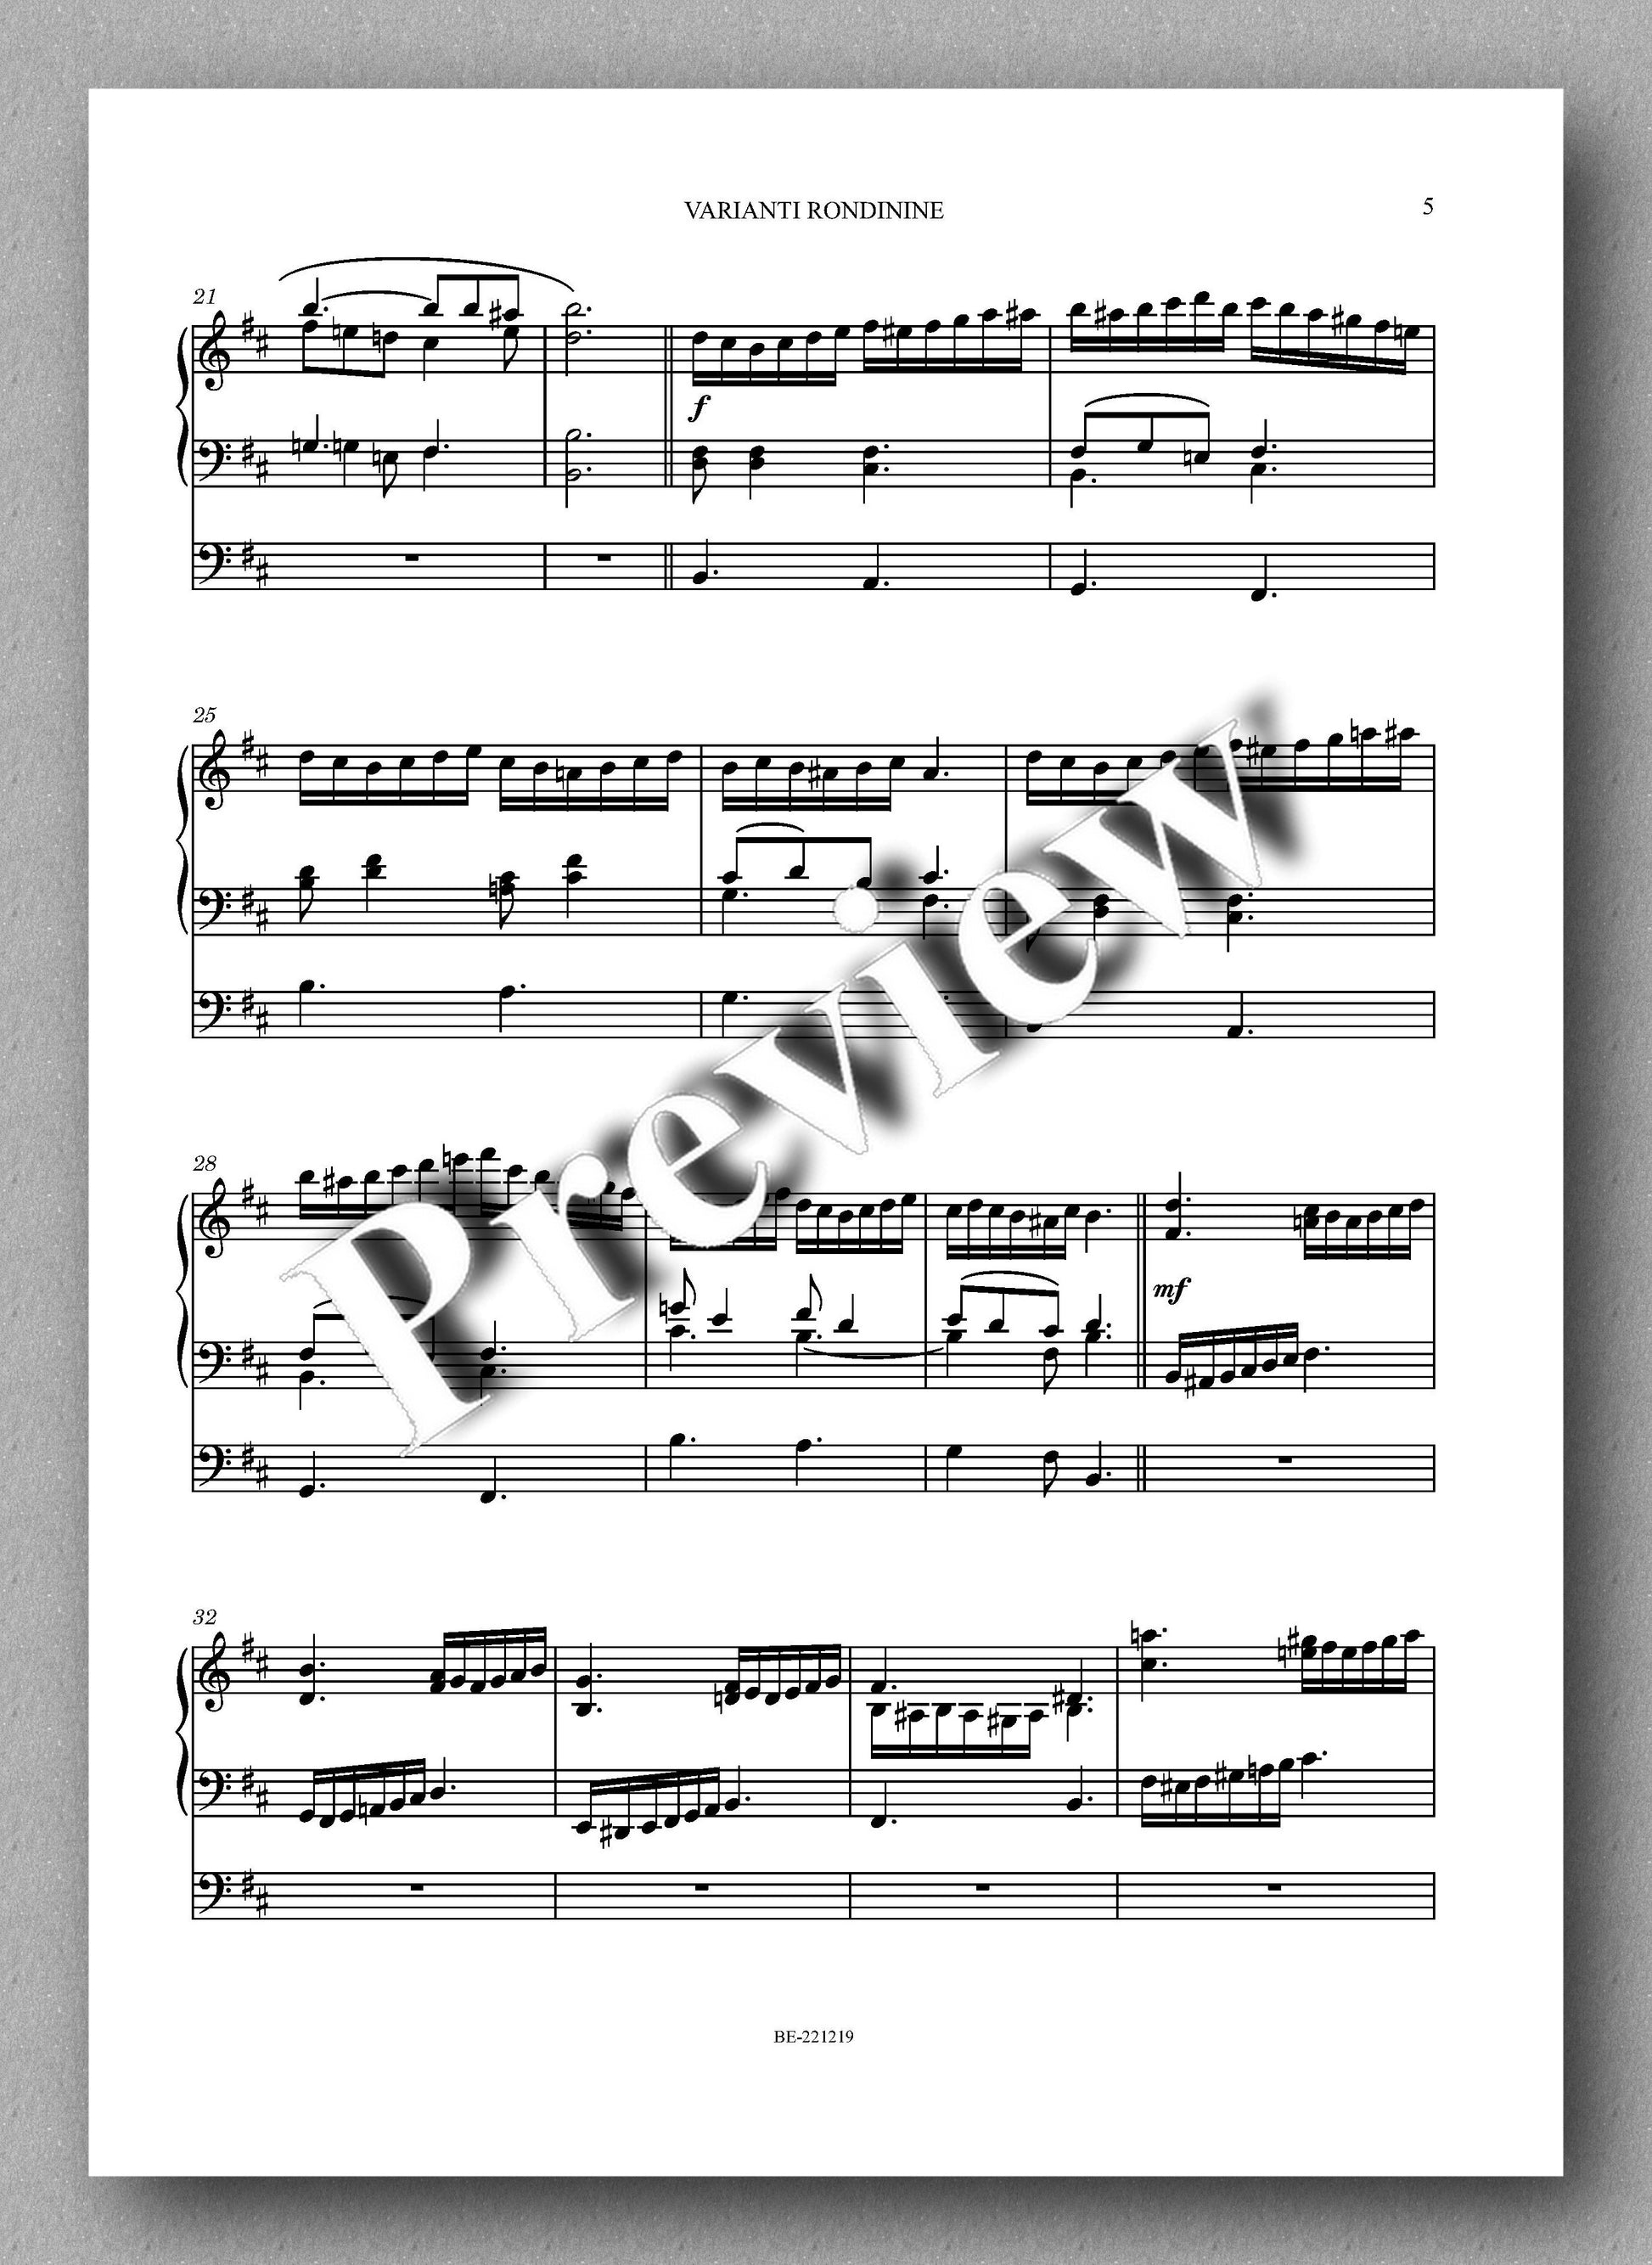 VARIANTI RONDININE by  Leonello Capodaglio - preview of the music score 2